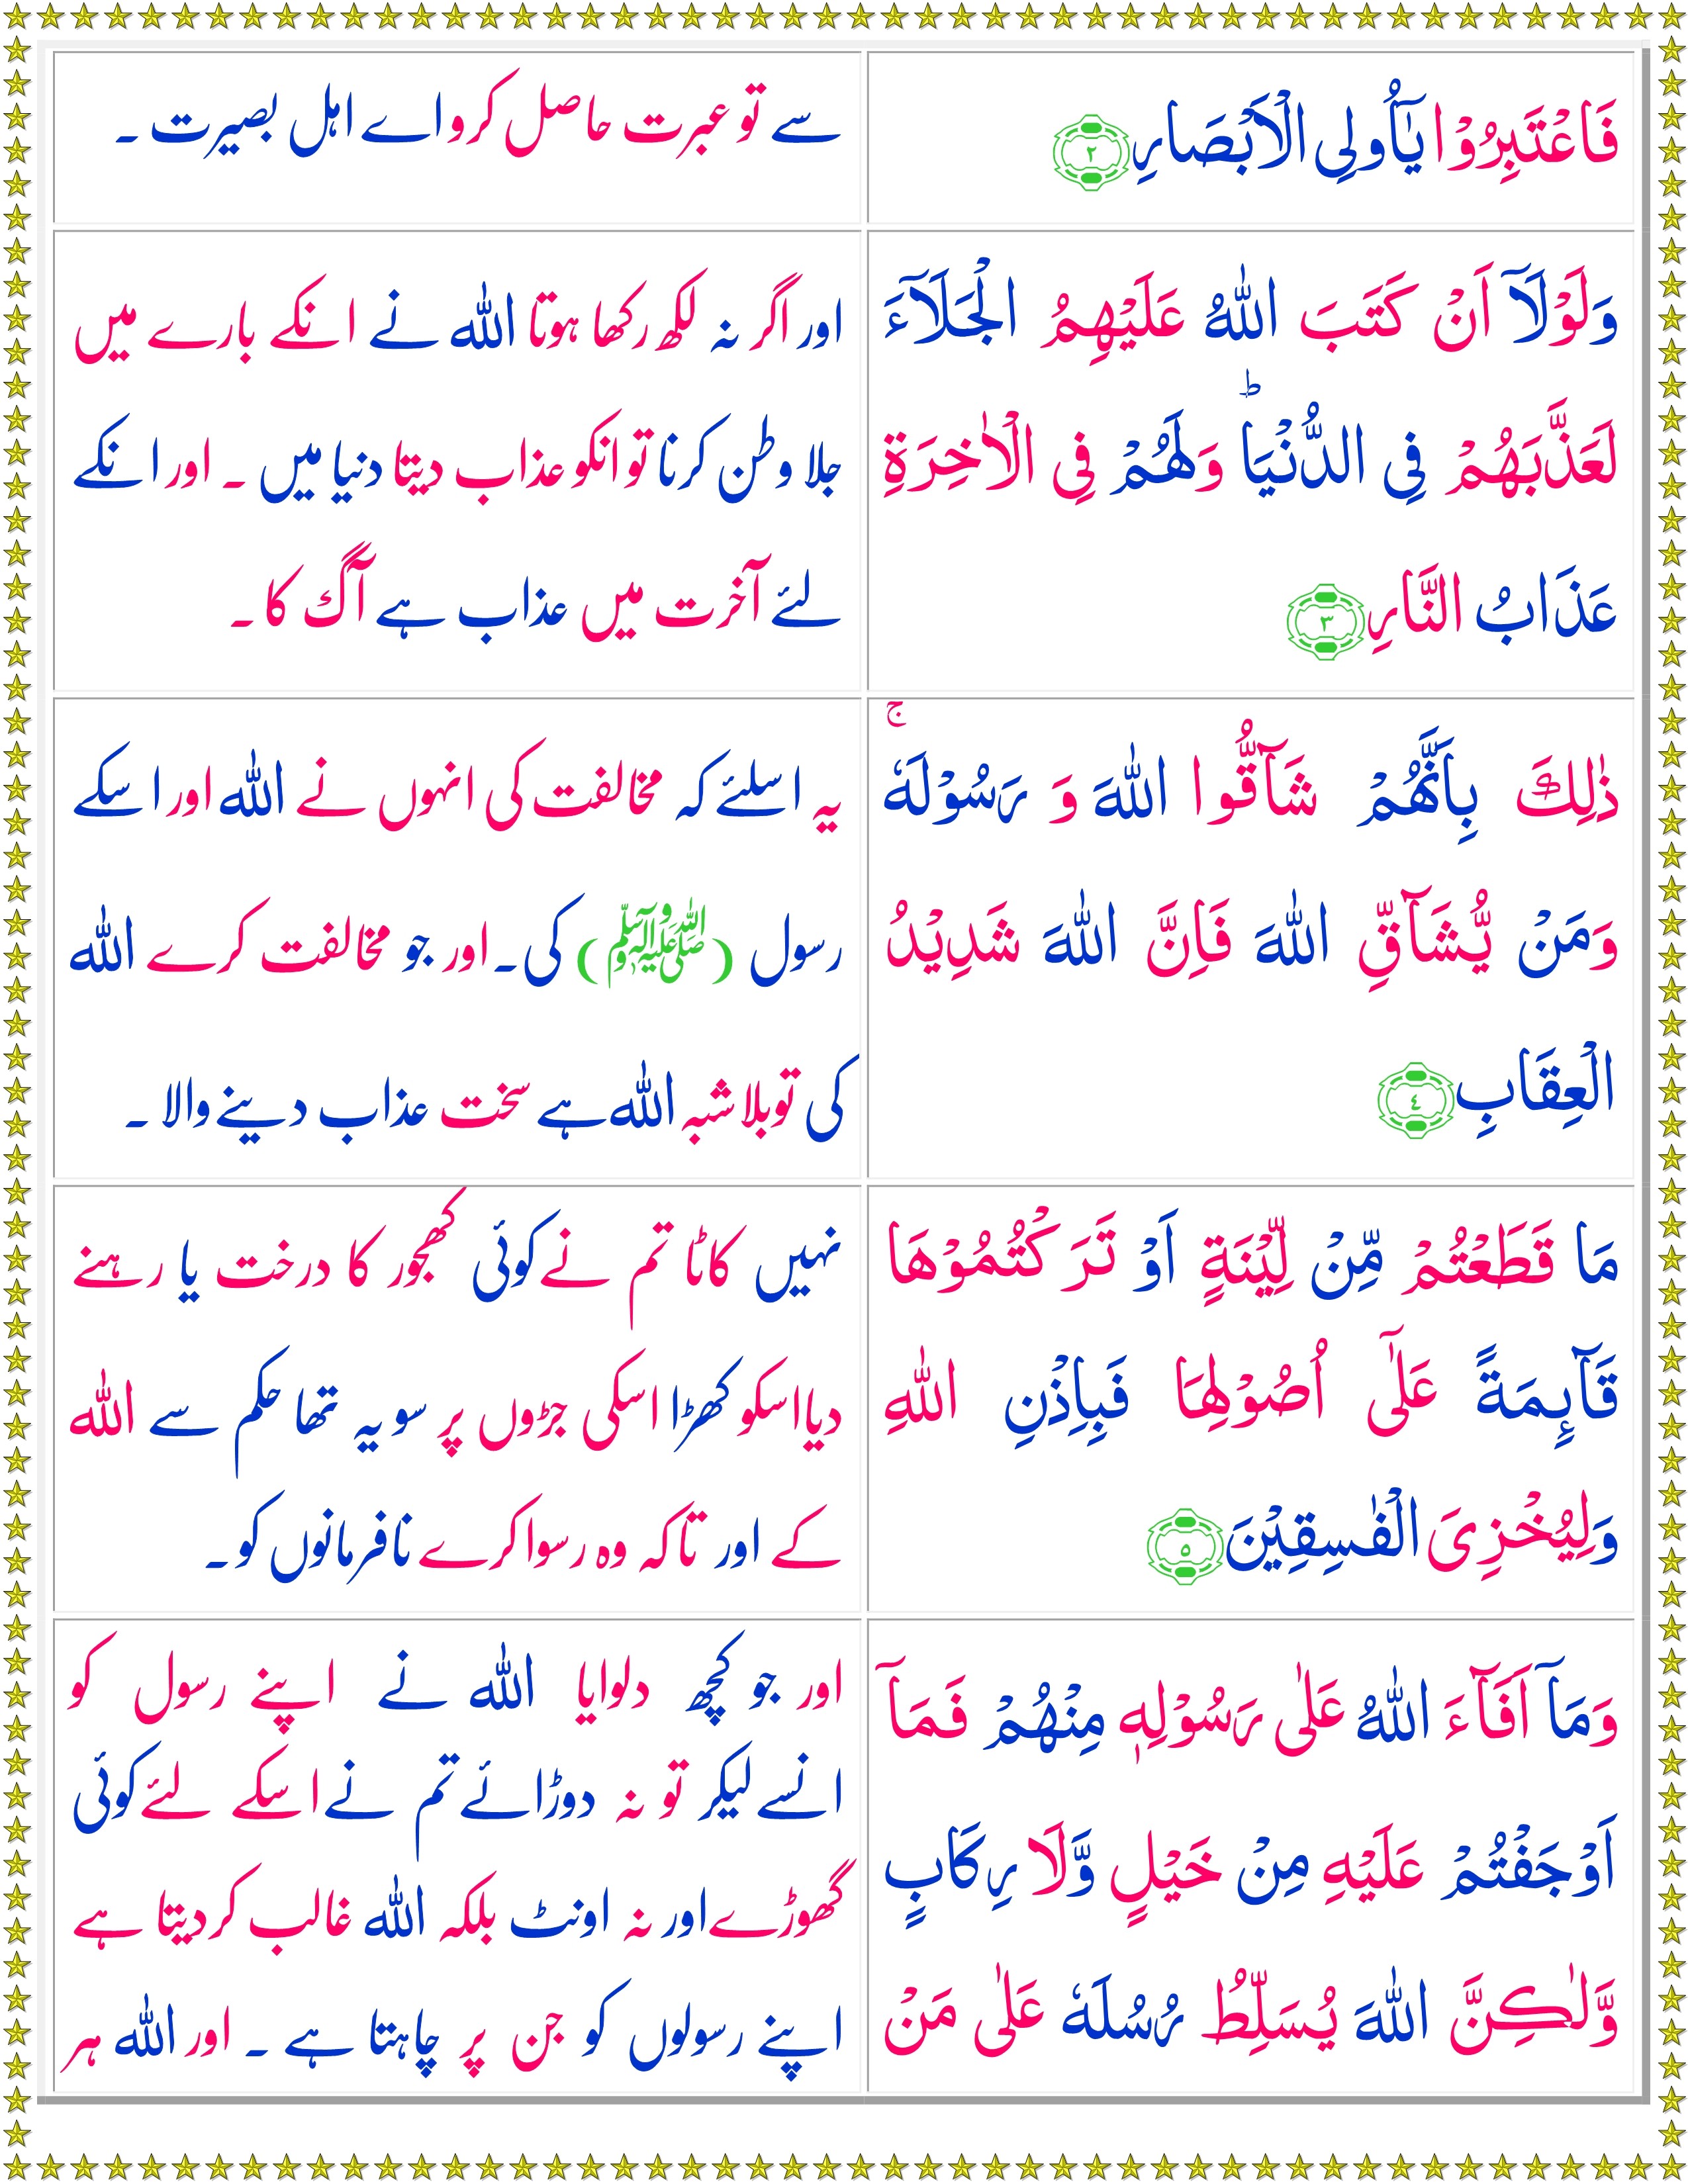 last 3 ayat of surah hashr